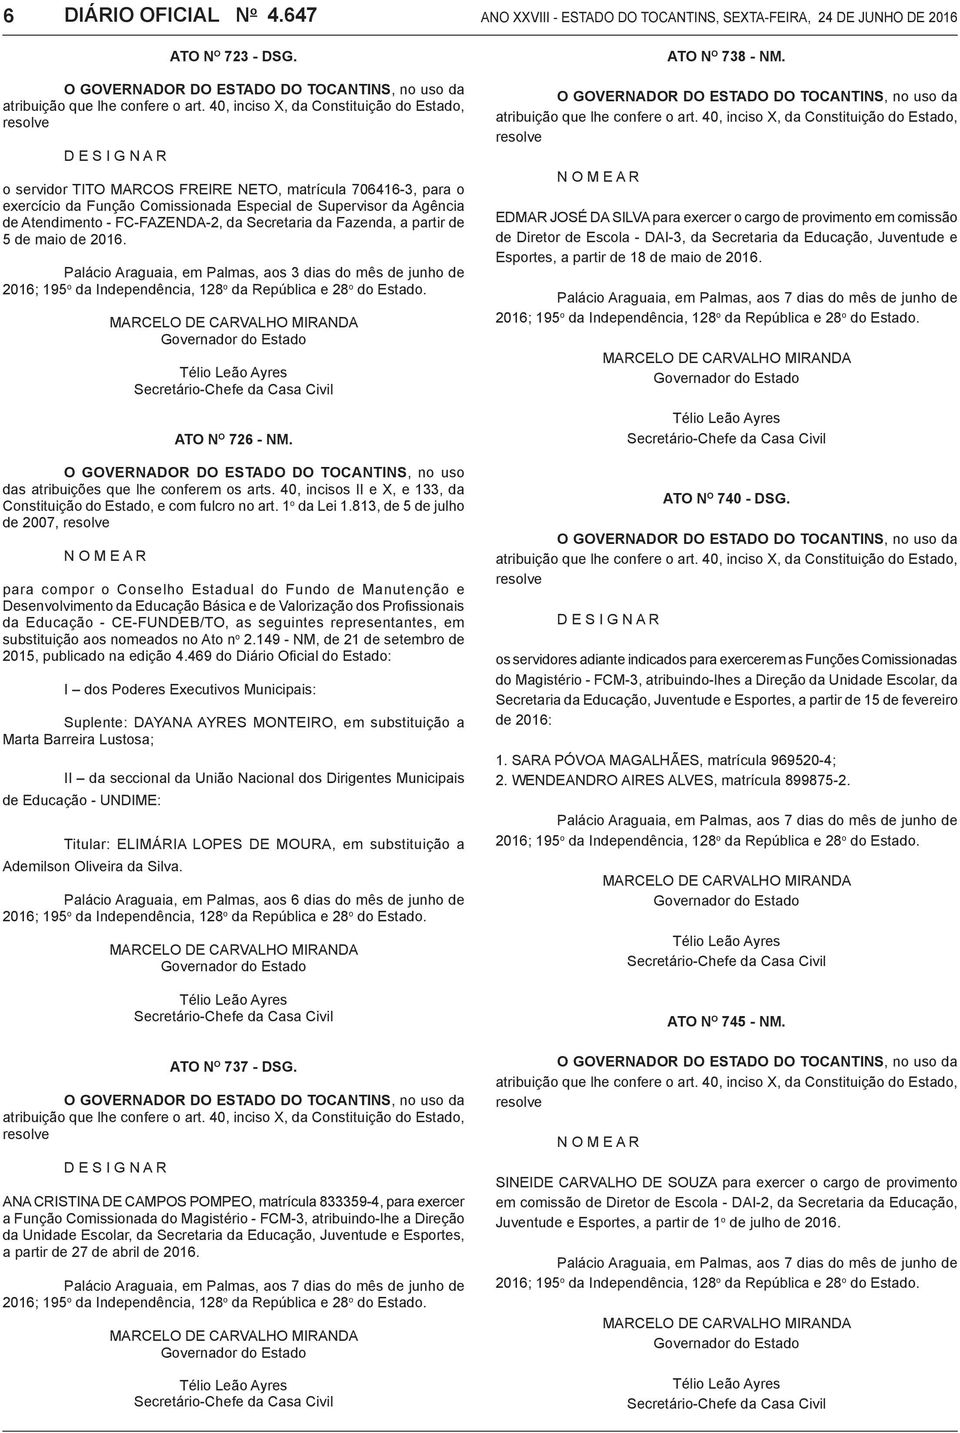 Atendimento - FC-FAZENDA-2, da Secretaria da Fazenda, a partir de 5 de maio de 2016. Palácio Araguaia, em Palmas, aos 3 dias do mês de junho de ATO N o 726 - NM.